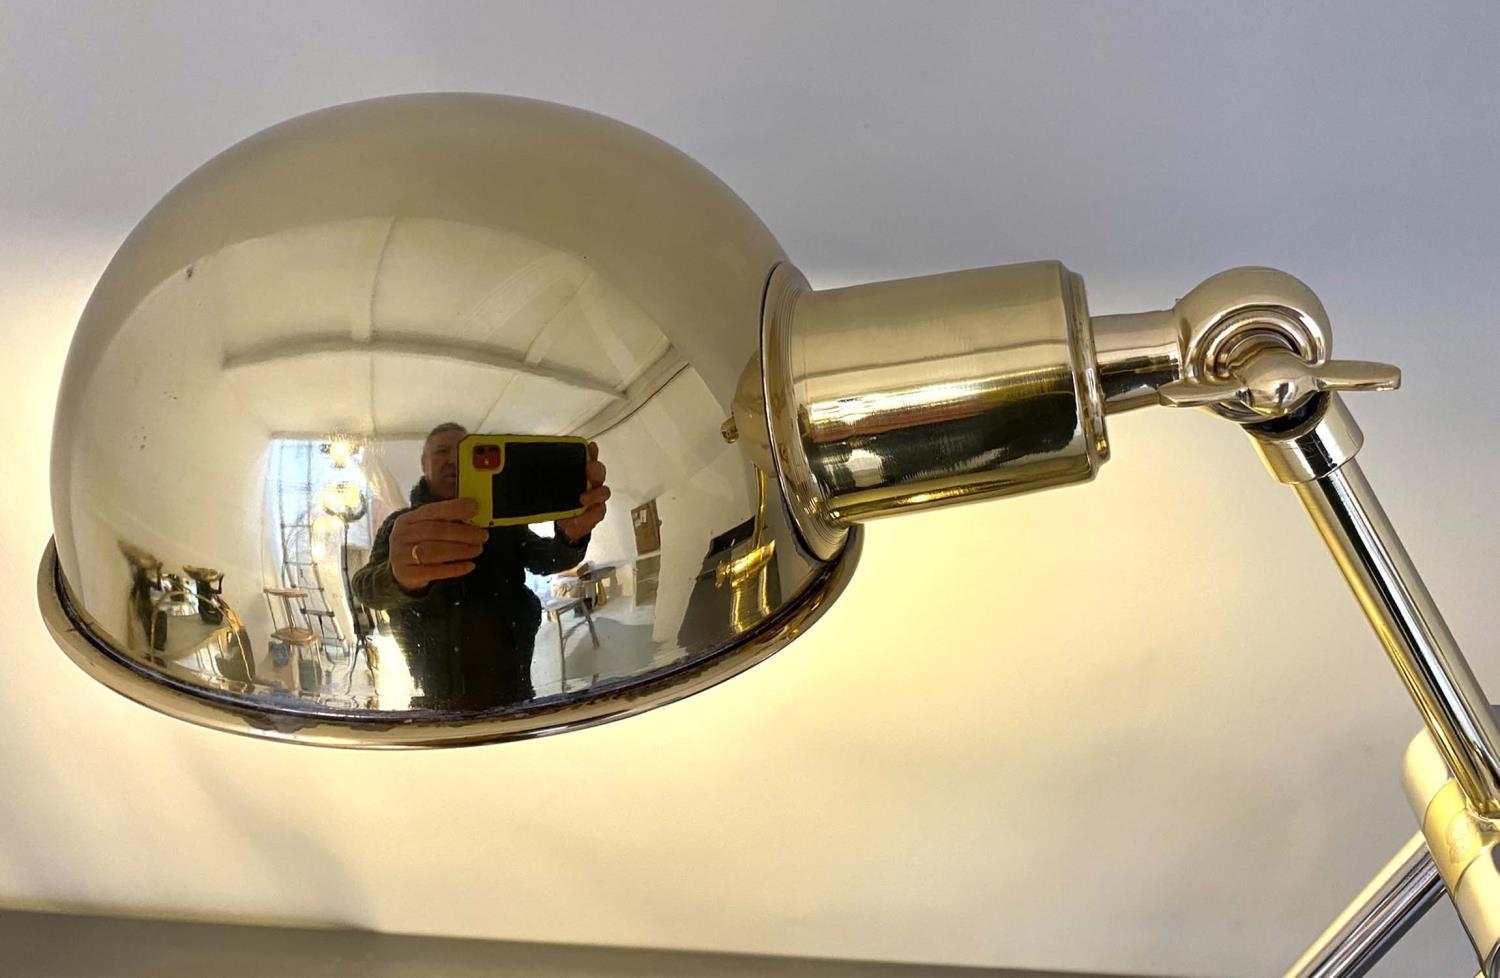 DESK LAMP, 45cm high, Art Deco style design, polished metal. - Image 3 of 5